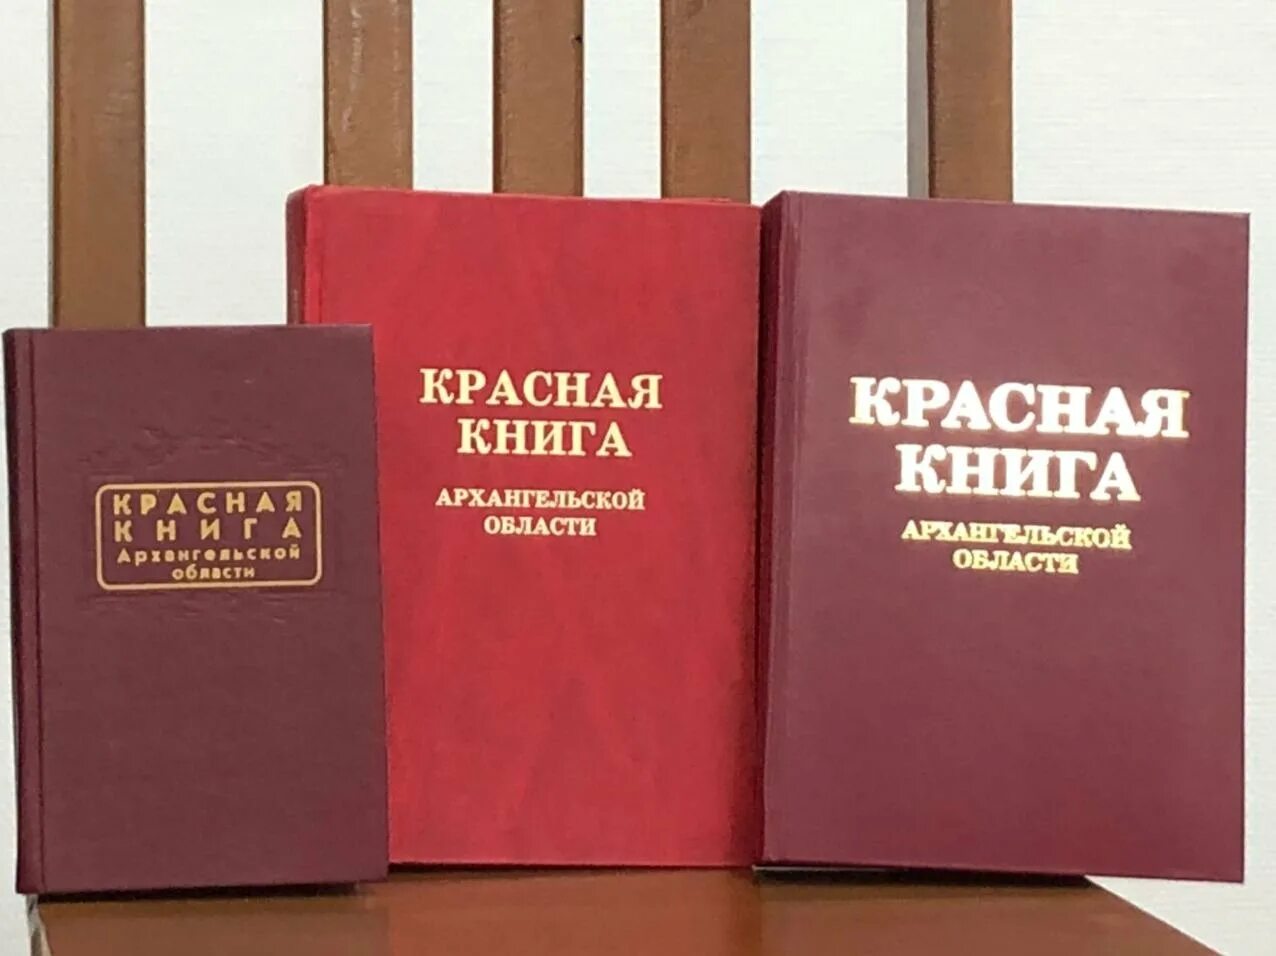 1 том красной книги. Красная книга. Krassnaya kniqa. Красная книга обложка. Виды красных книг.